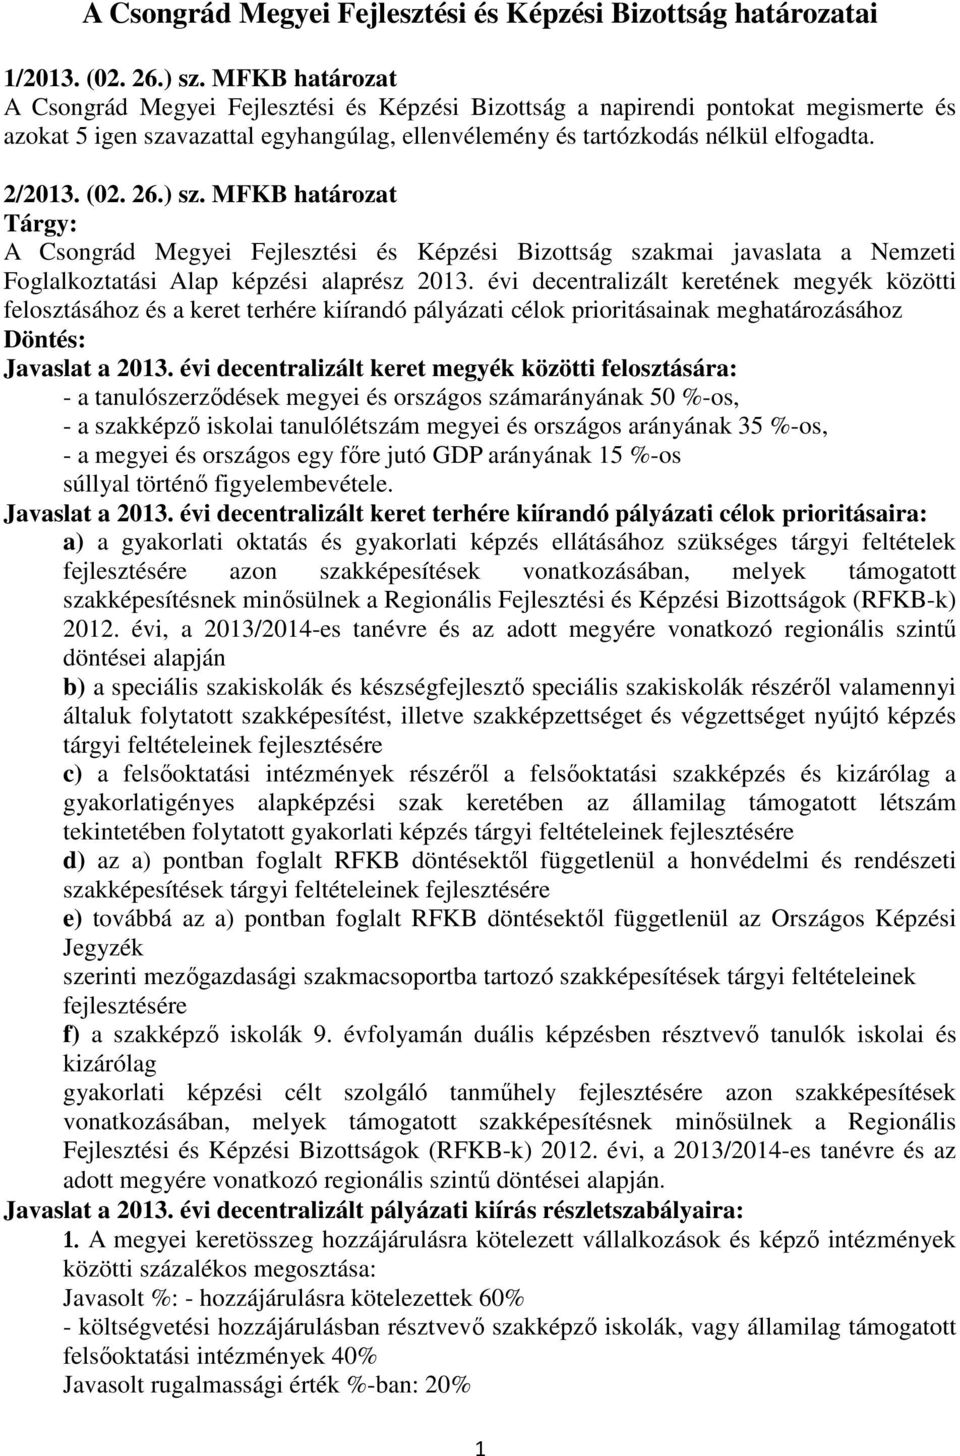 26.) sz. MFKB határozat Tárgy: A Csongrád Megyei Fejlesztési és Képzési Bizottság szakmai javaslata a Nemzeti Foglalkoztatási Alap képzési alaprész 2013.